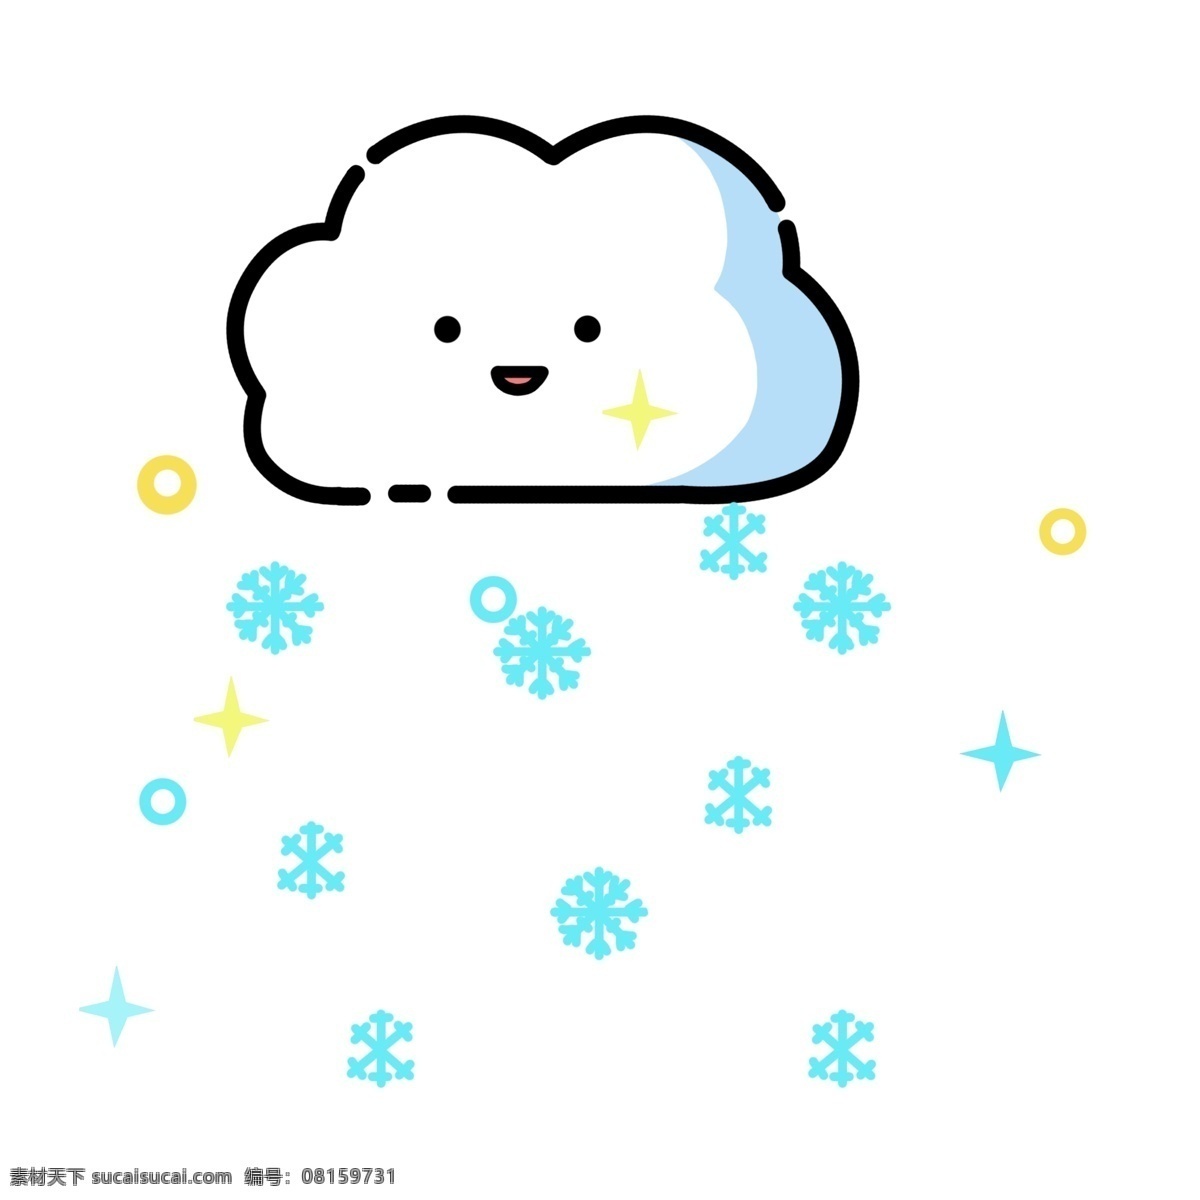 手绘 卡通 下雪 云朵 装饰 可爱 醒目 小文艺 微笑 小清新 蓝色 粉色 笑脸 白色